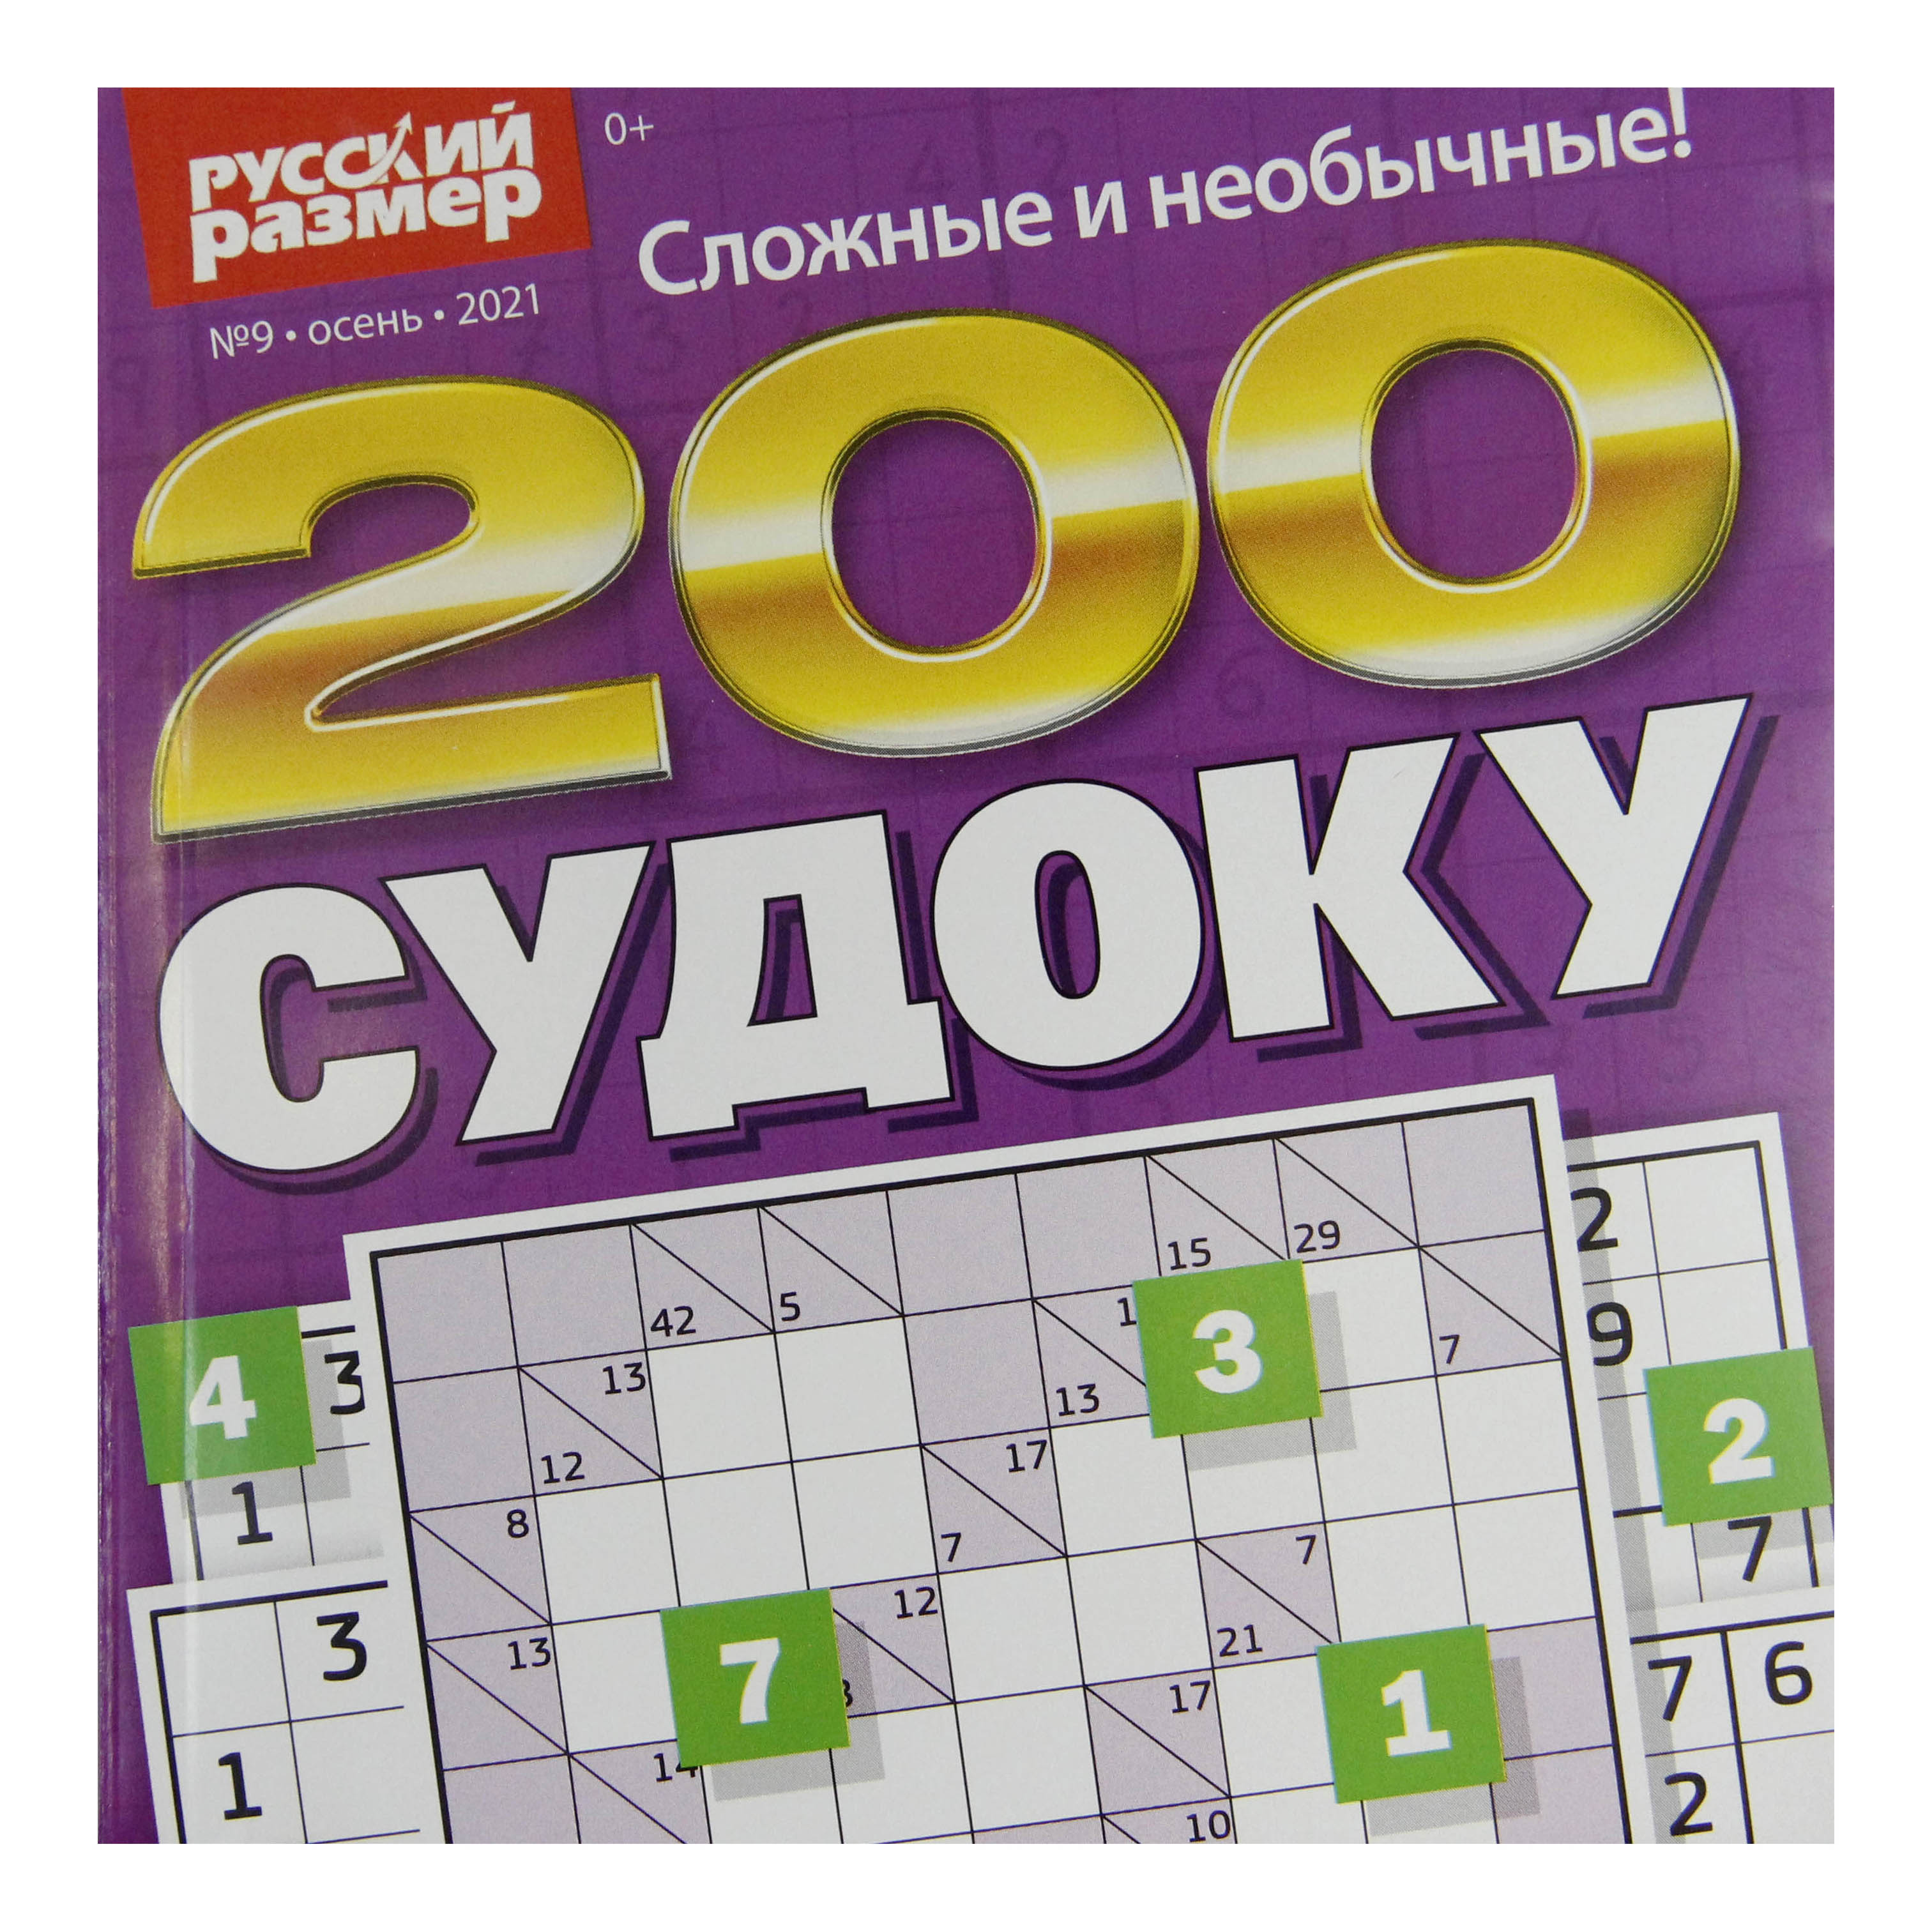 Журнал Русский размер 200 Судоку